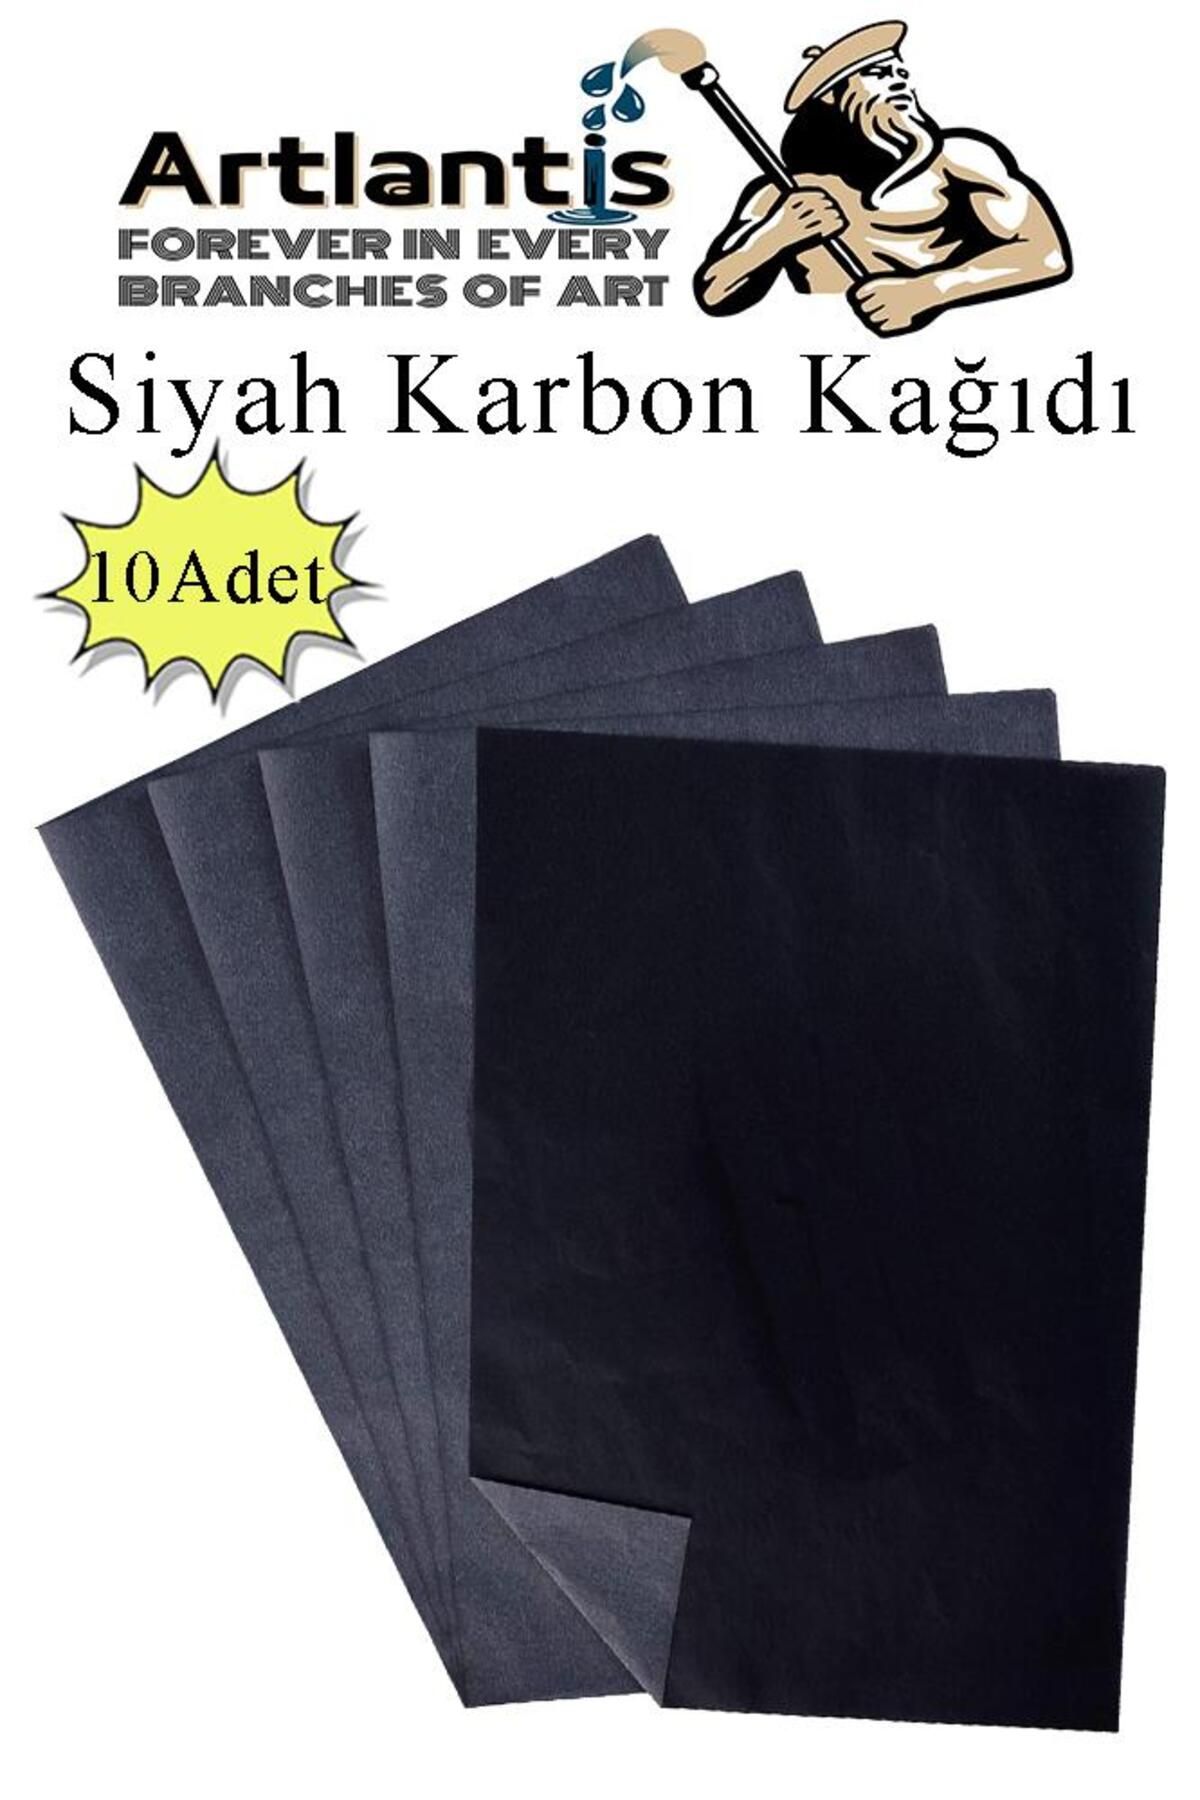 Artlantis Siyah Karbon Kağıdı A4 10 Adet 21x29,7 cm Kopya Kağıdı Transfer Kağıdı Renkli Karbon Kağıdı